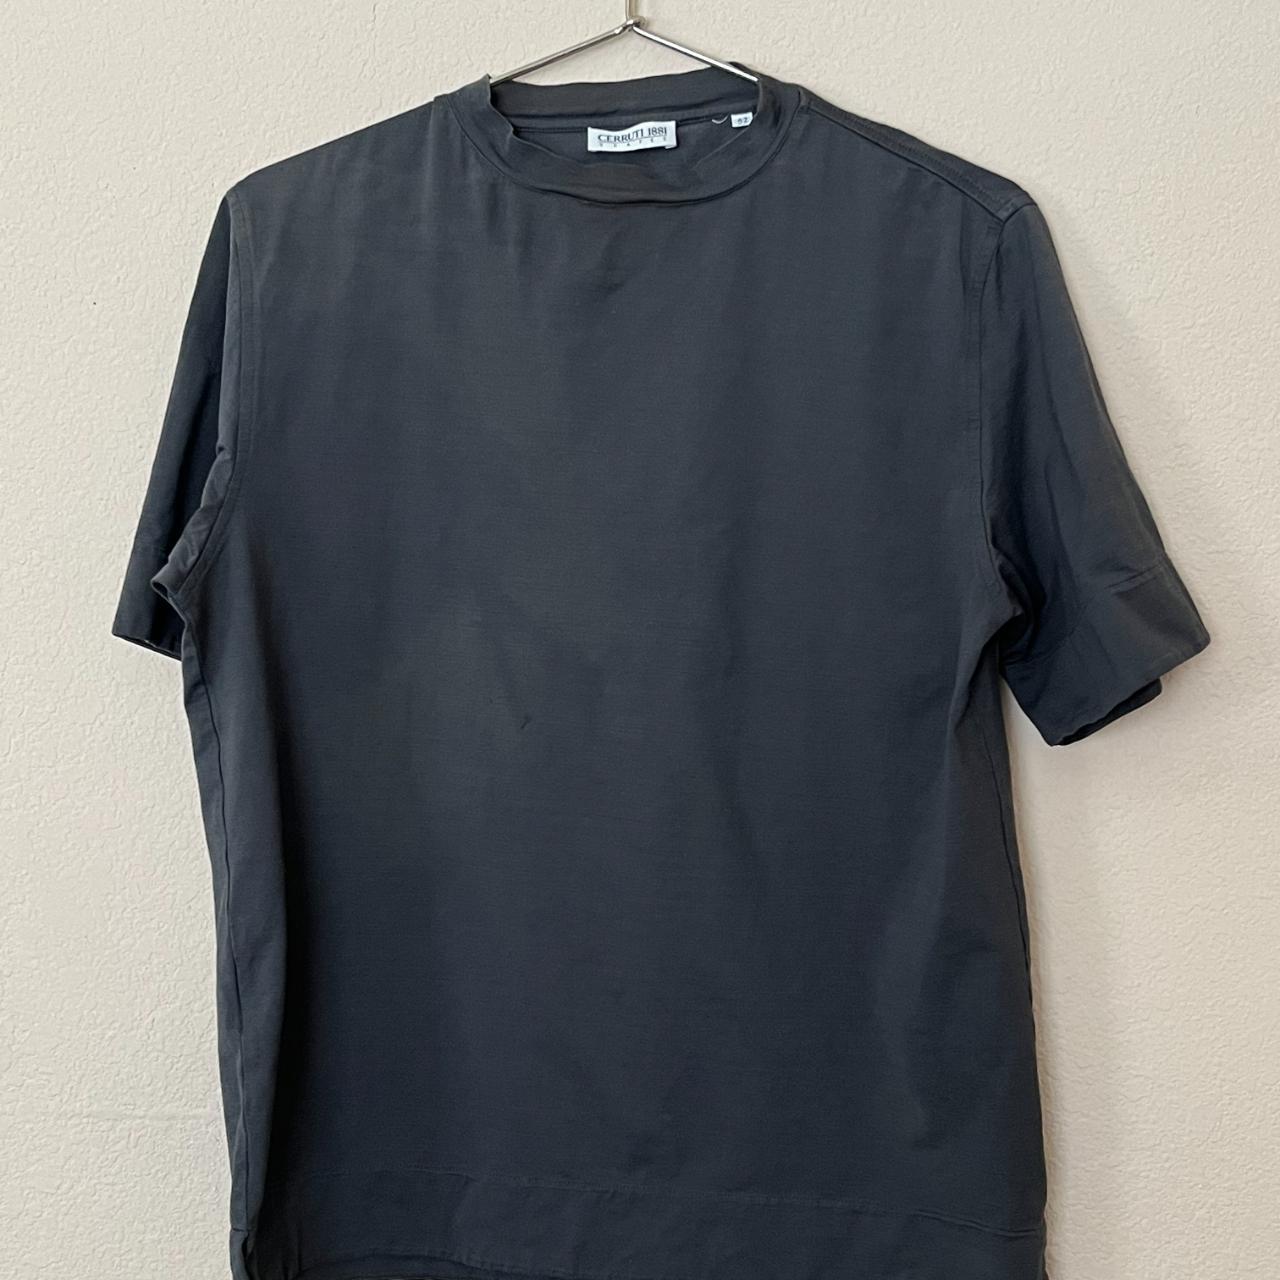 Vtg Cerruti 1881 Shapes t-shirt Dark grey/faded... - Depop